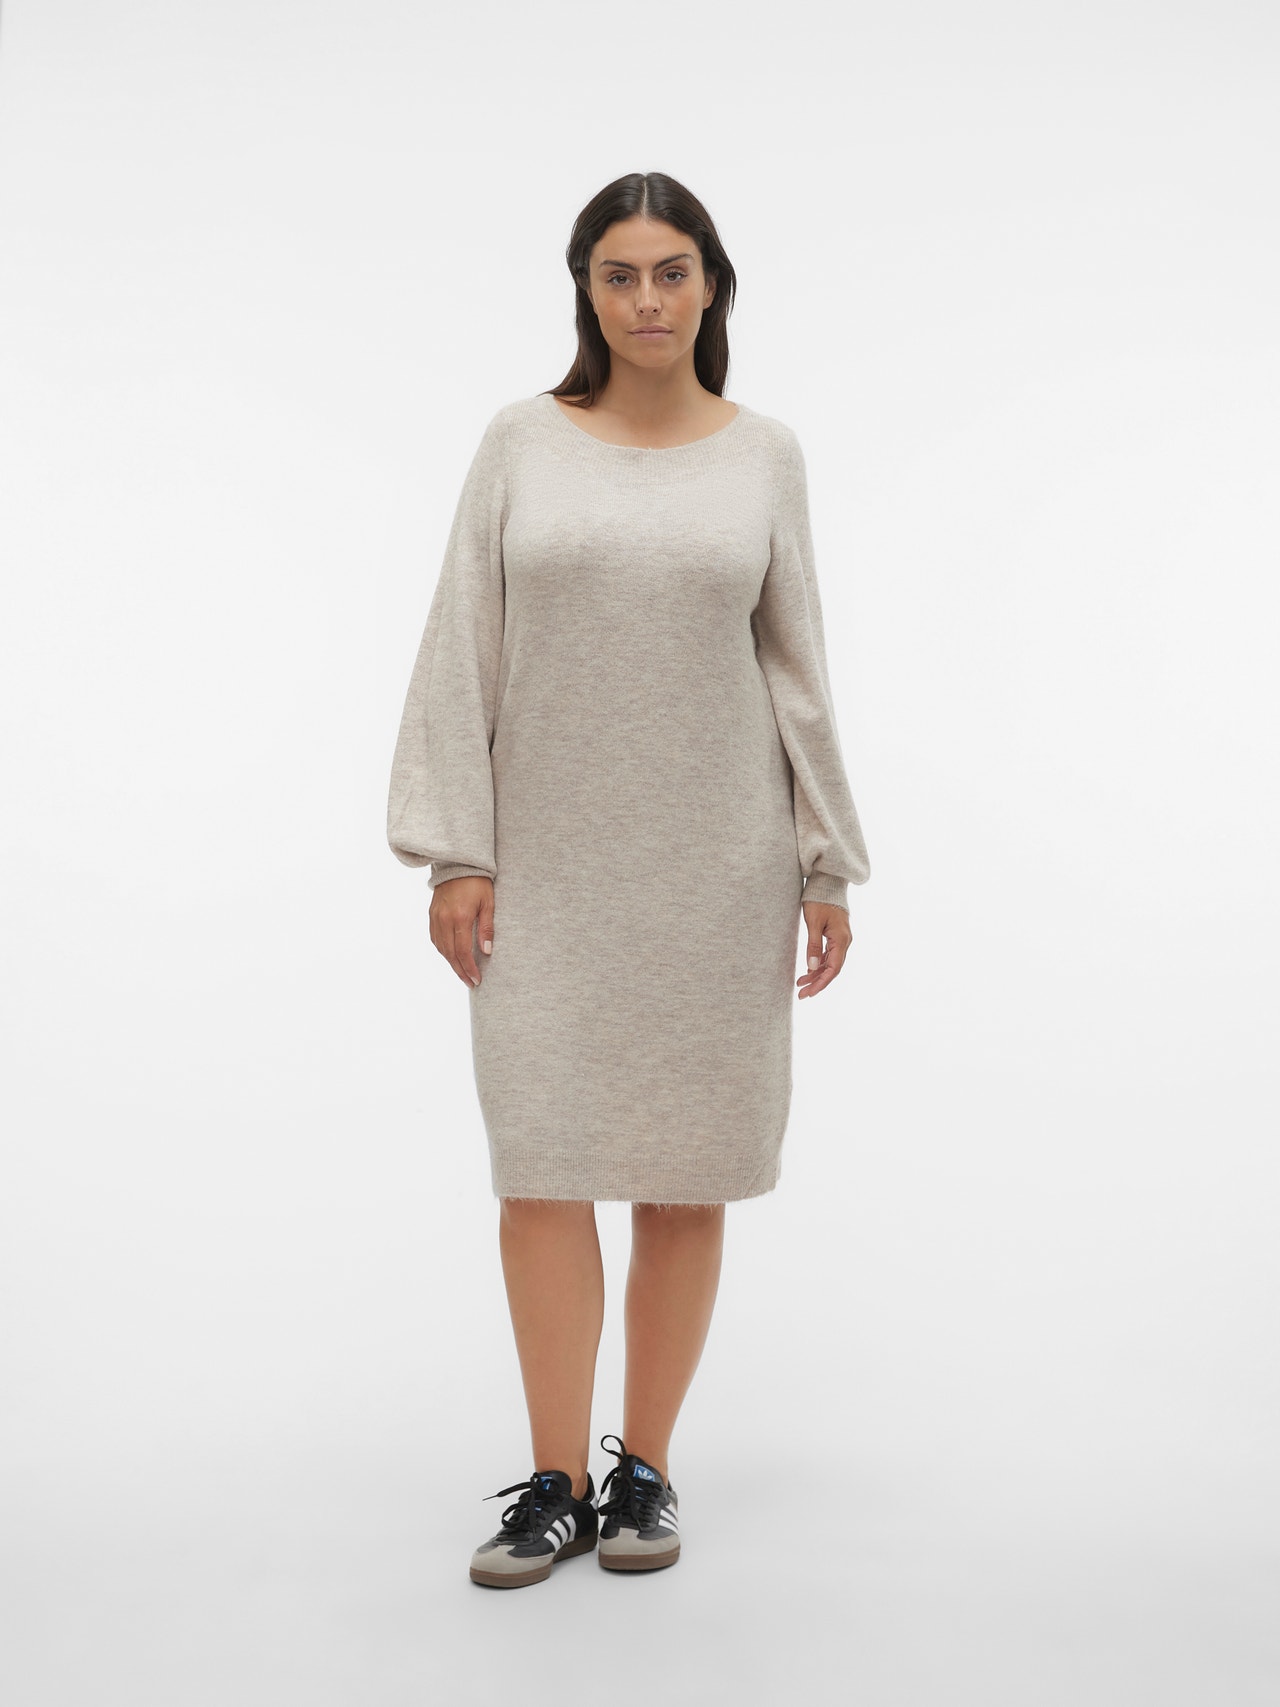 Vero Moda VMCLEFILE Krótka sukienka -Birch - 10304107